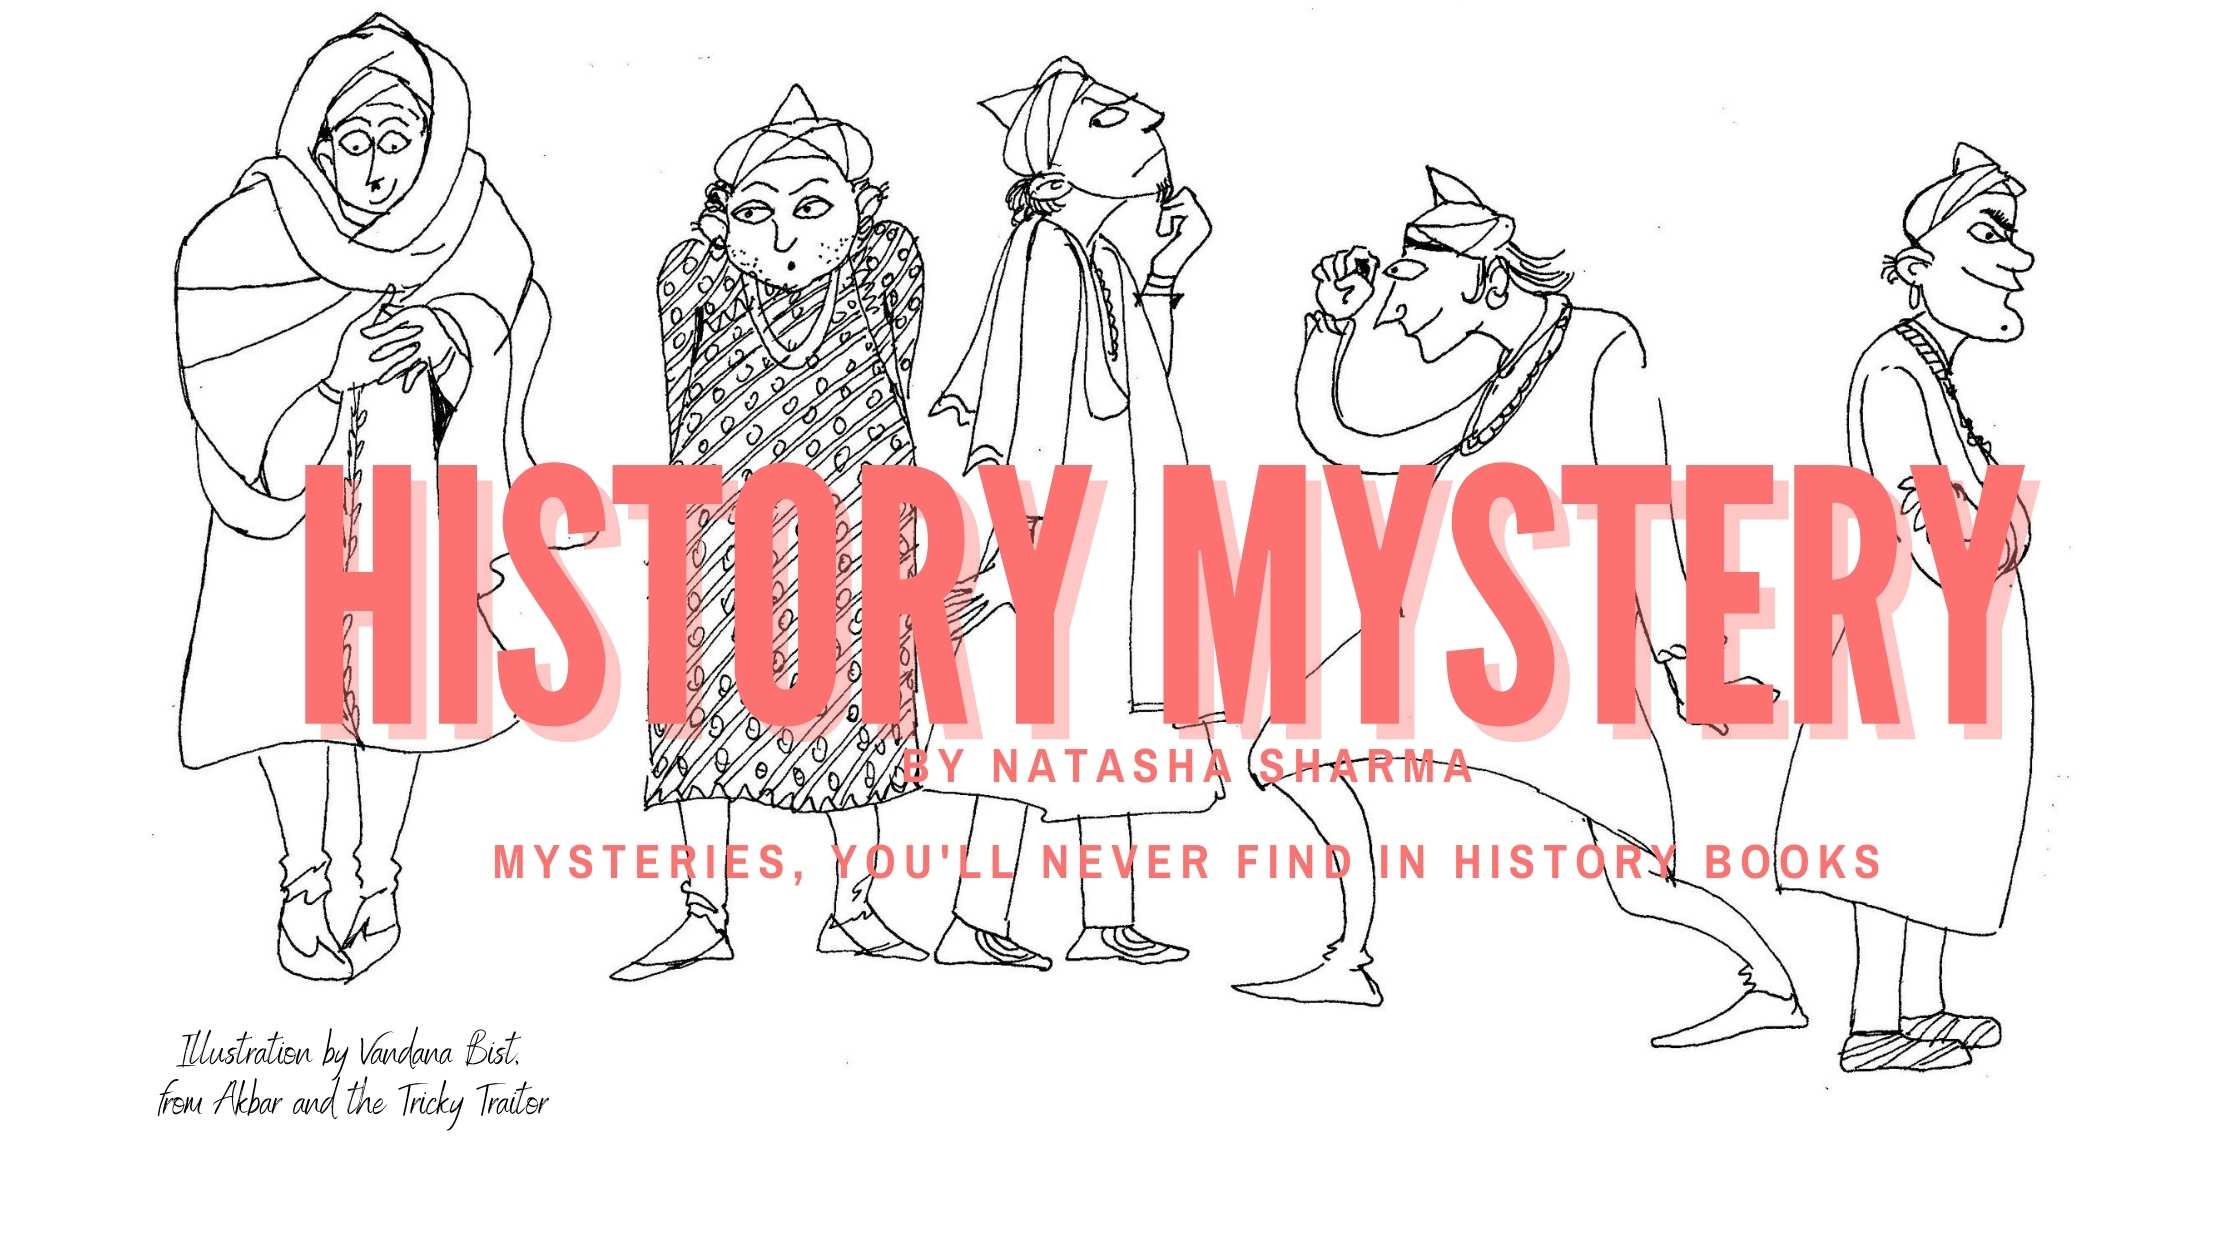 History Mystery by Natasha Sharma